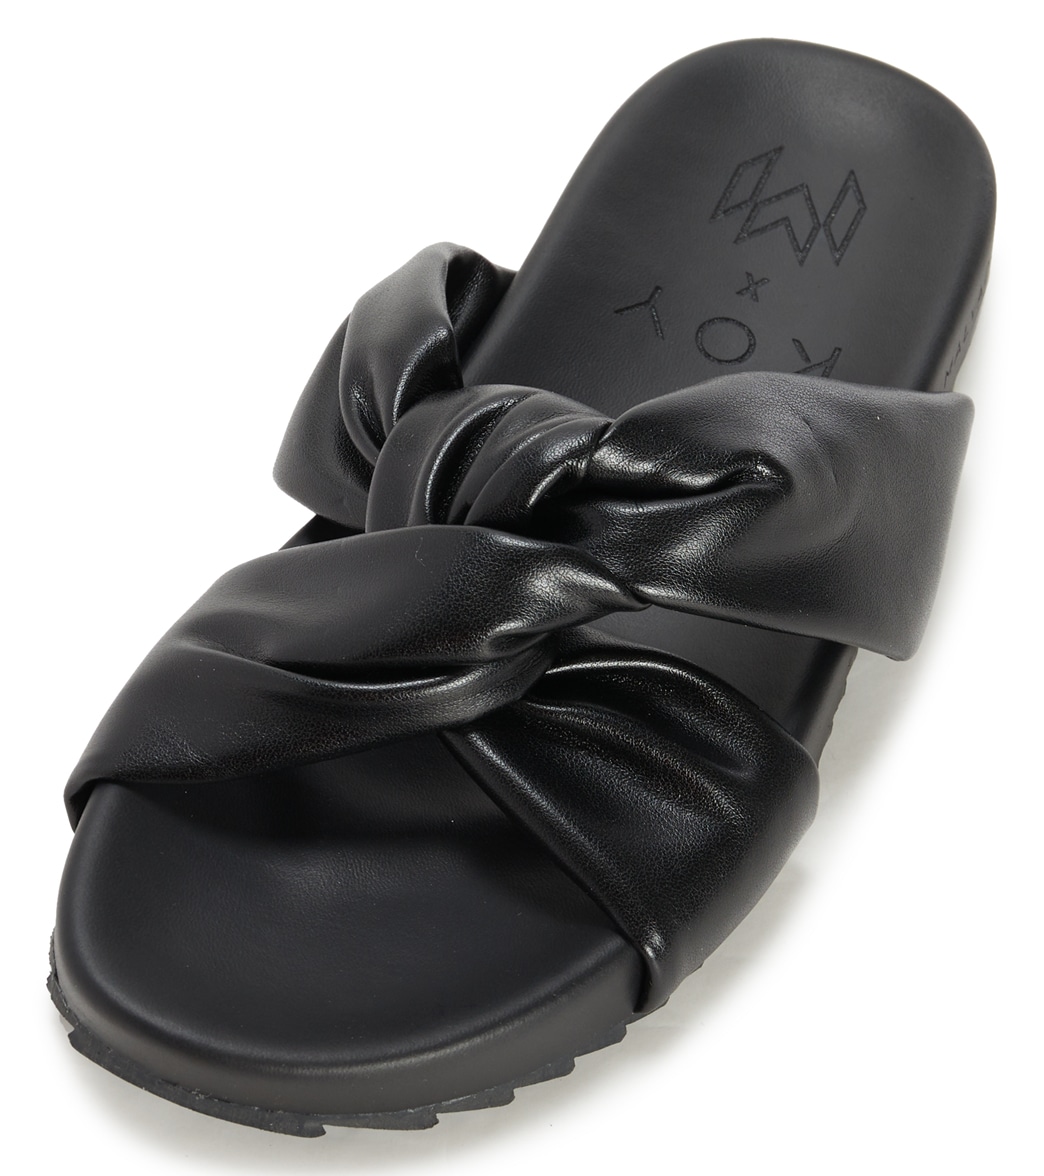 Malvados Women's Icon Koy Slides Sandals - Noir 7 - Swimoutlet.com